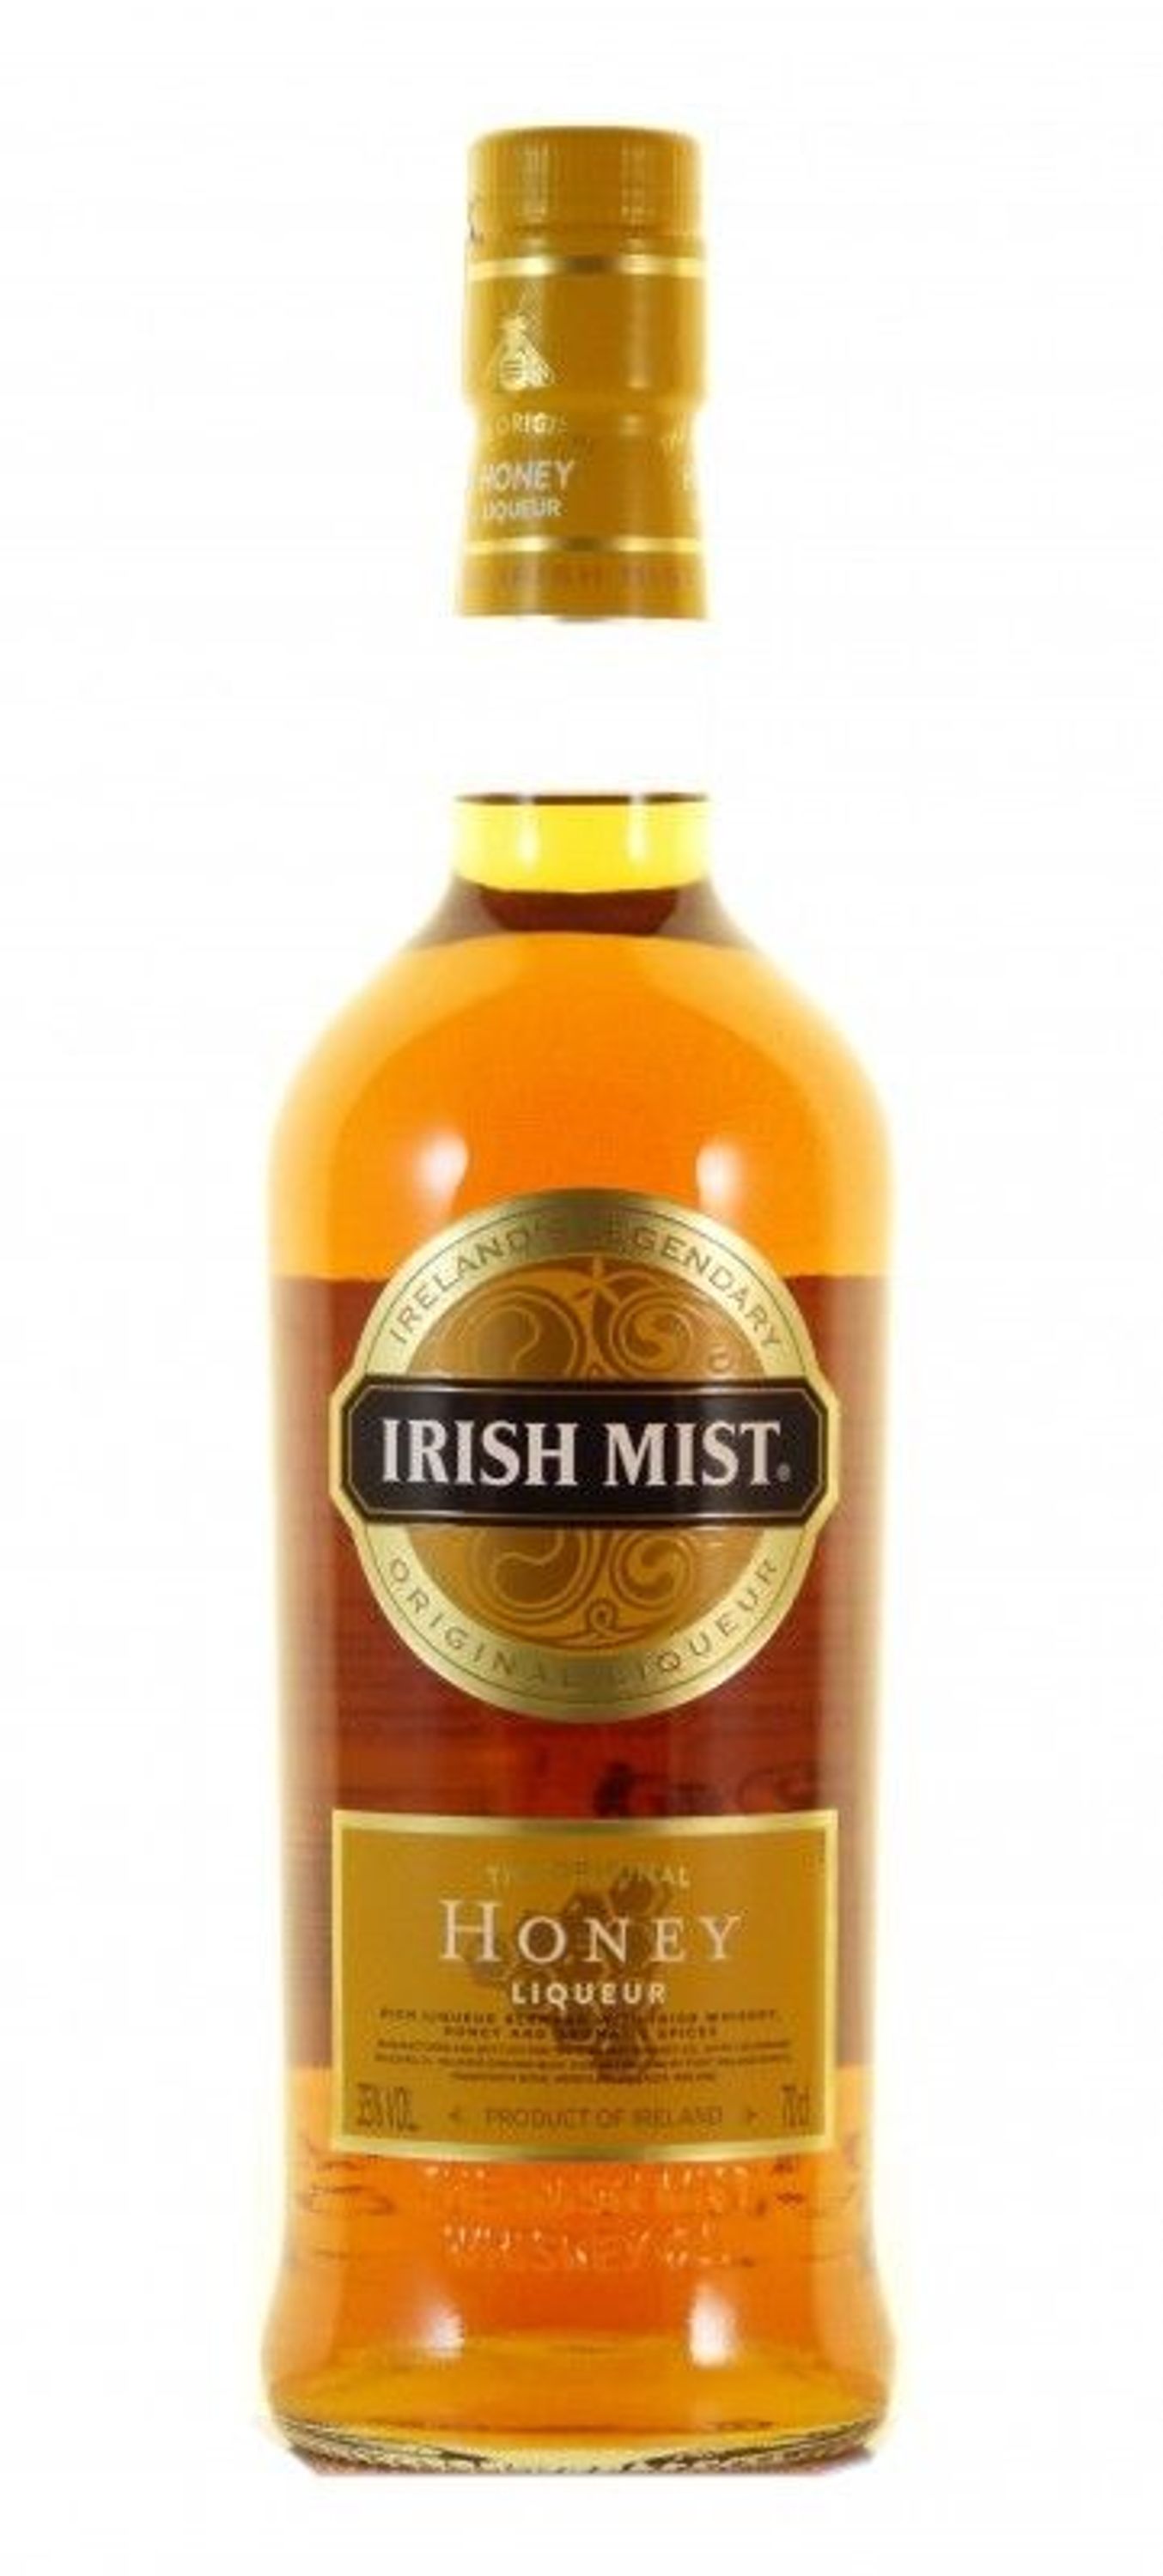 Irish Mist Honey Liqueur 0.7l, alc. 35% vol., Ireland whiskey liqueur